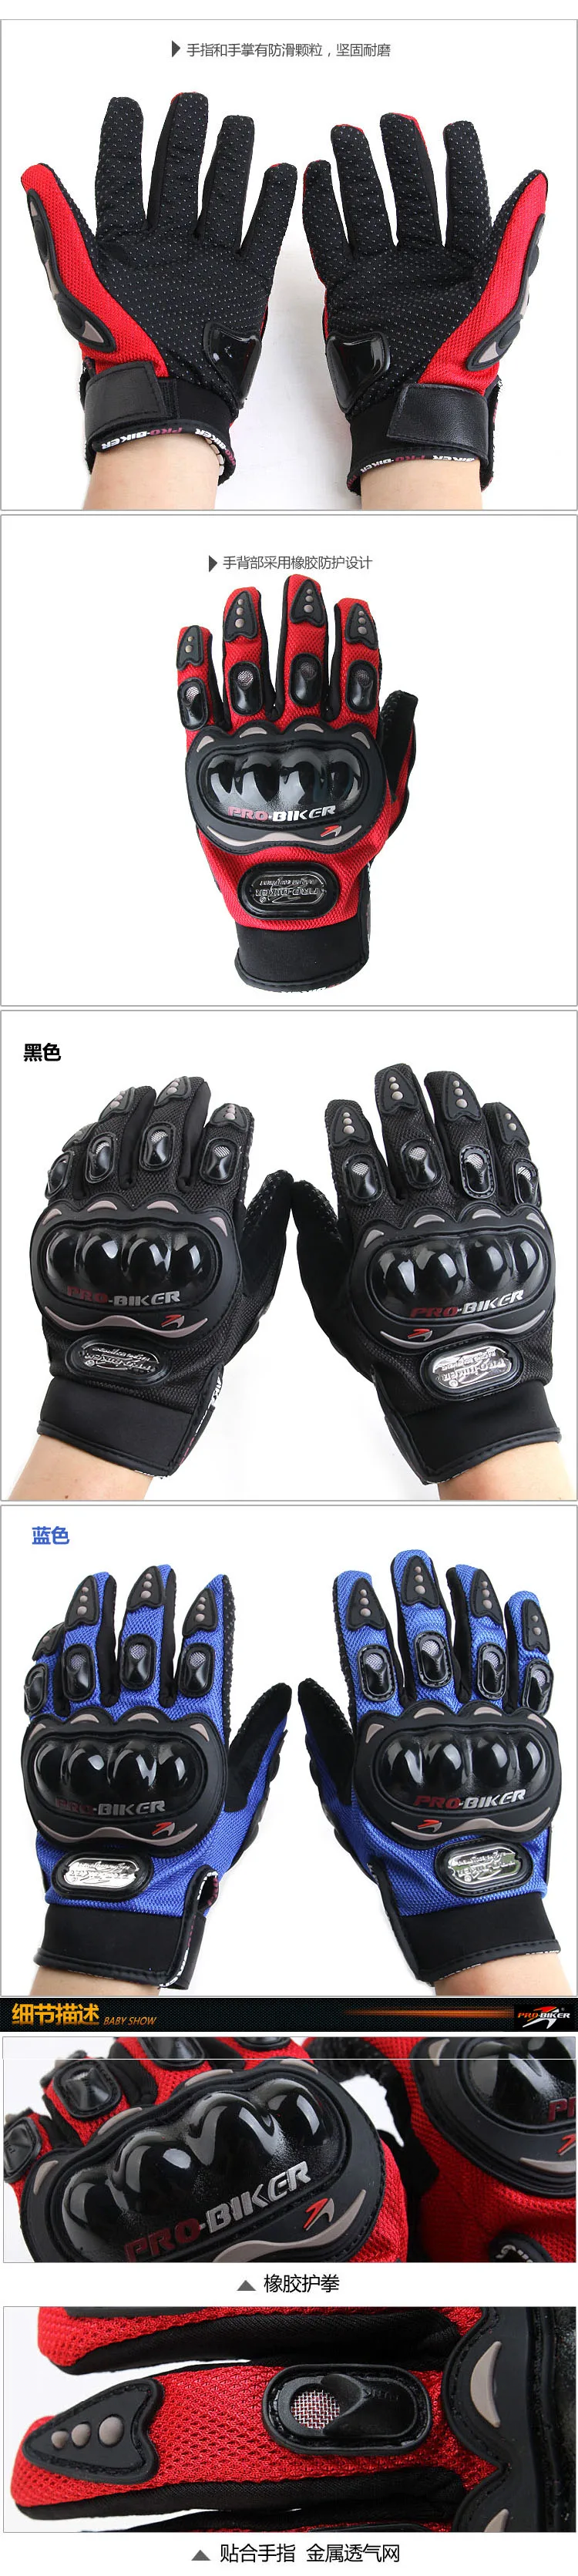 Горячая распродажа! Аутентичные защитные велосипедные перчатки для гоночных мотоциклов Pro-Biker, перчатки для беговых мотоциклов